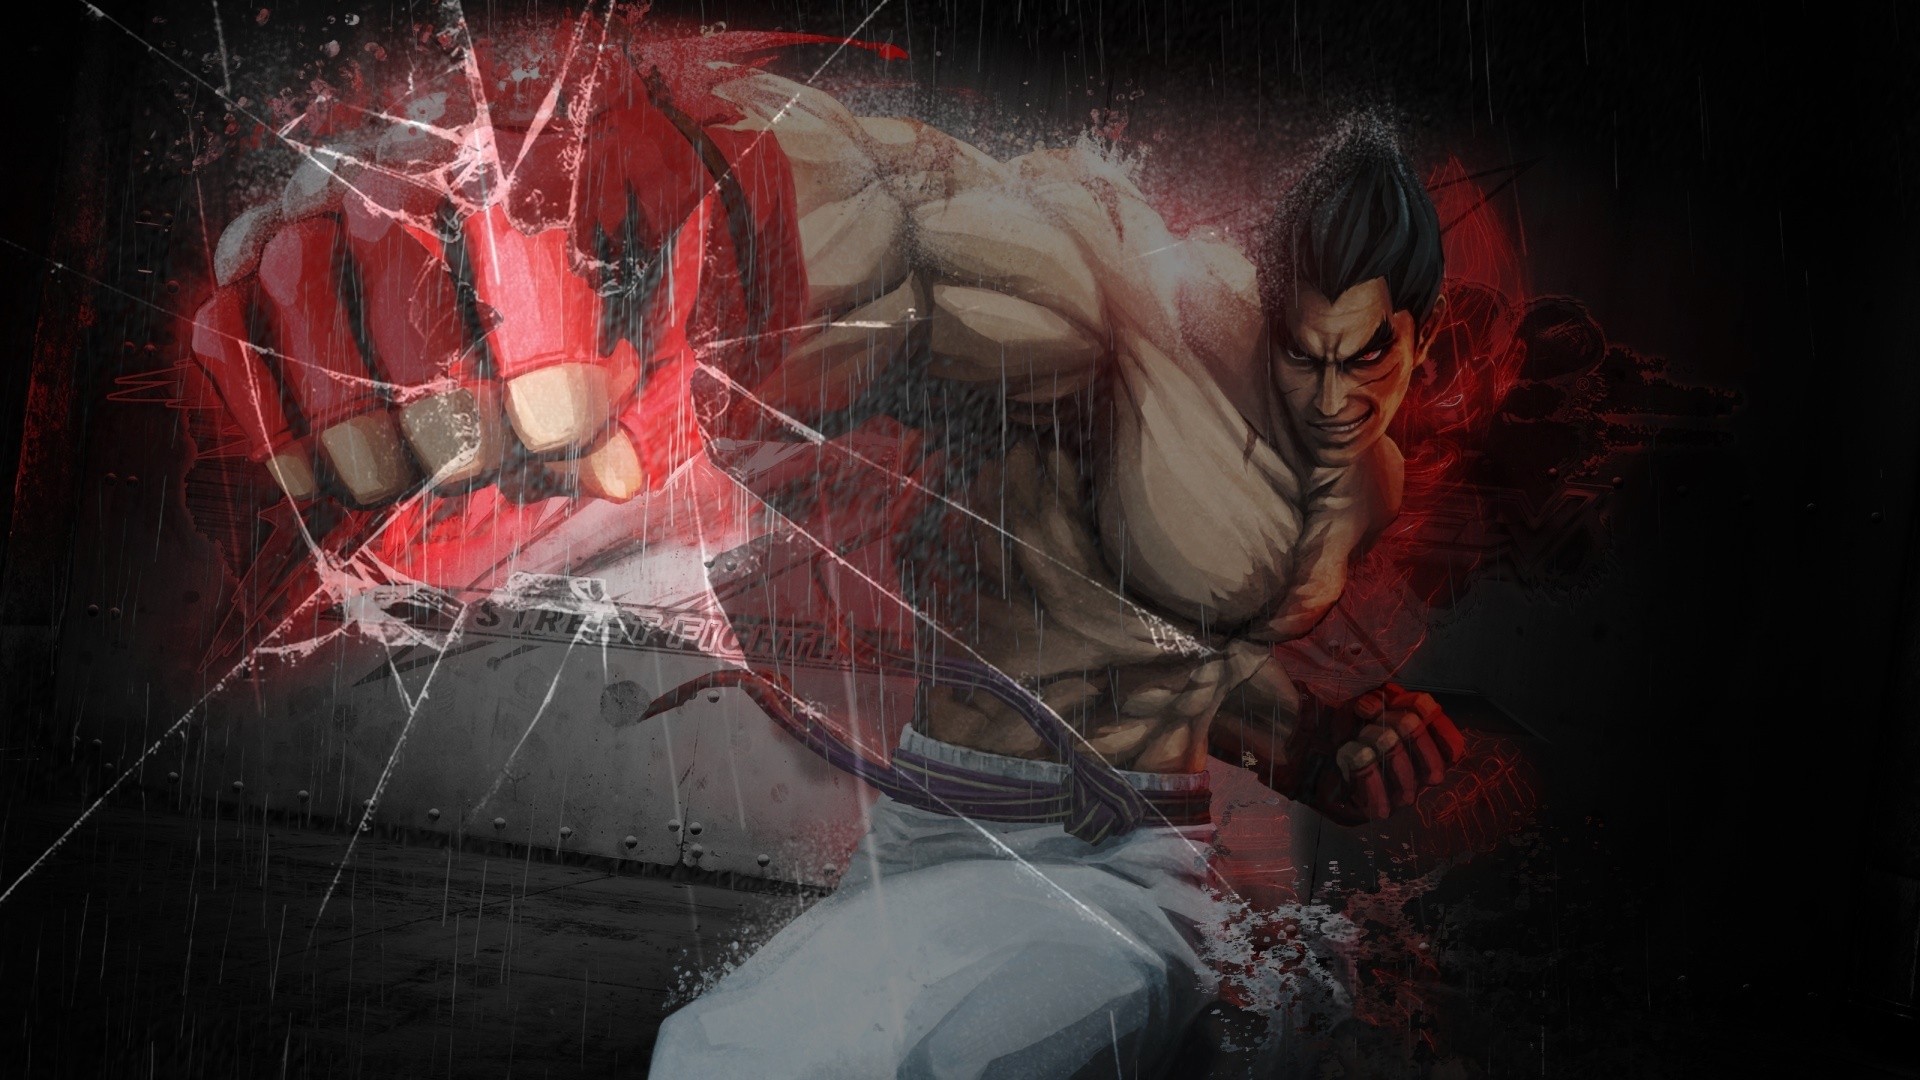 Tekken Kazuya Mishima là một nhân vật kinh điển trong thế giới game. Hãy xem hình ảnh liên quan đến Kazuya để ngắm nhìn những bức ảnh đẹp và đầy nghệ thuật về nhân vật huyền thoại này.